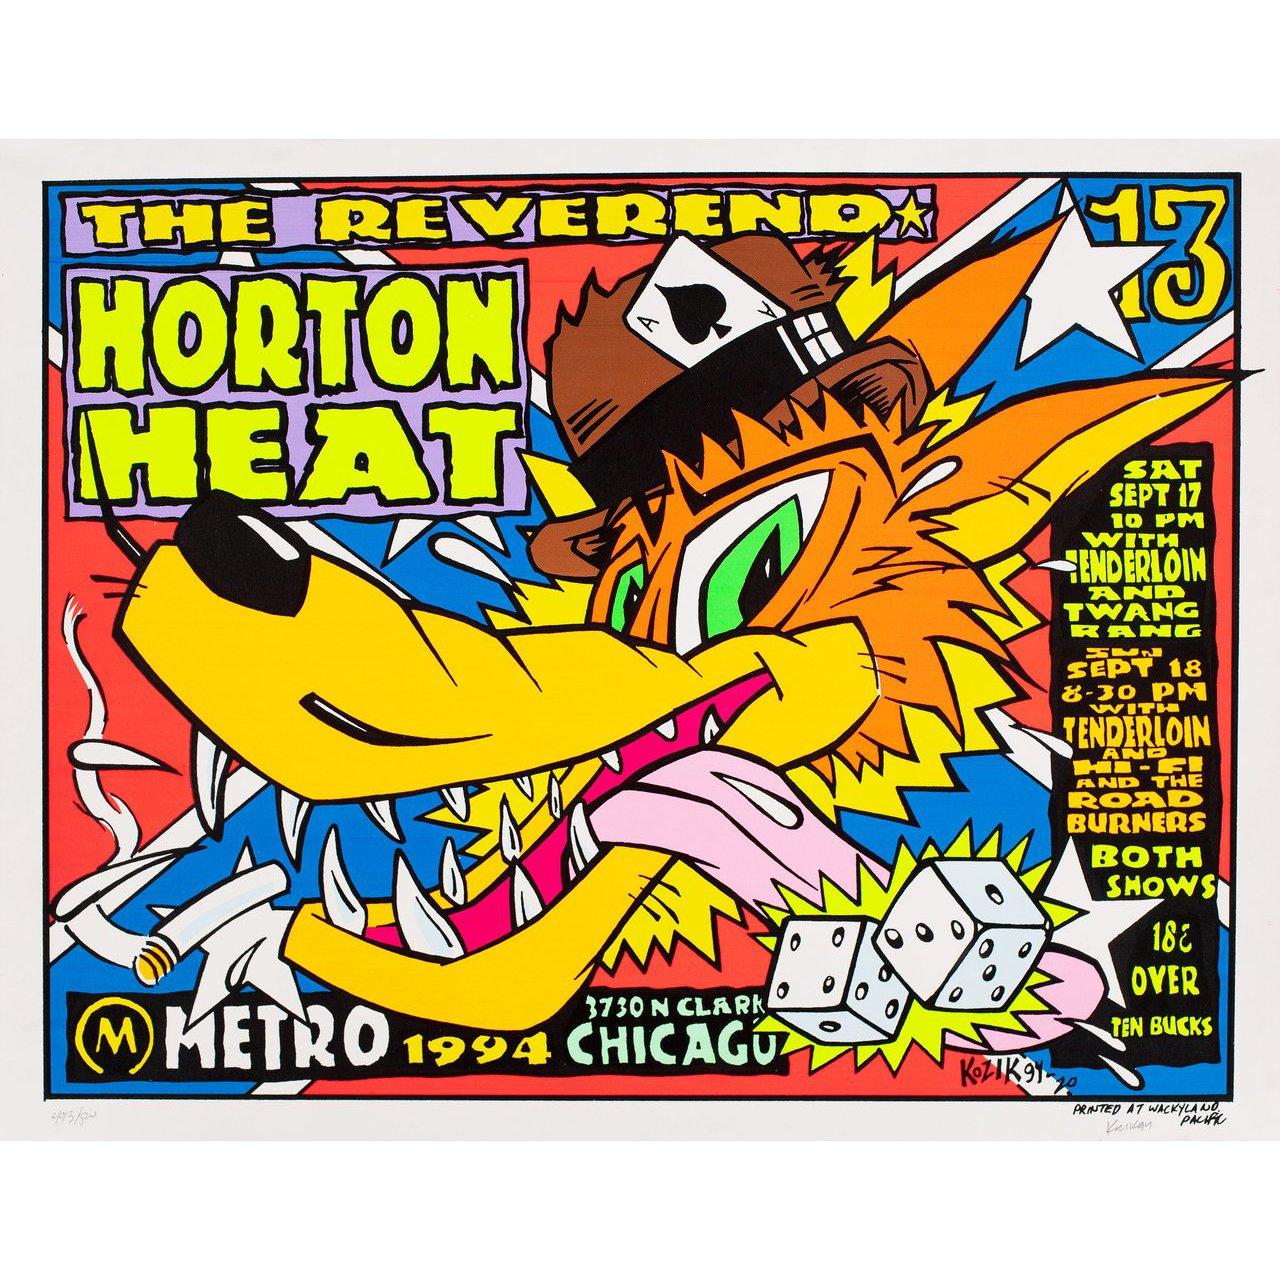 Originales US-Miniplakat von Frank Kozik aus dem Jahr 1994 für The Reverand Horton Heat (1994). Unterzeichnet von Frank Kozik. Sehr guter Zustand, gerollt. Bitte beachten Sie: Die Größe ist in Zoll angegeben und die tatsächliche Größe kann um einen